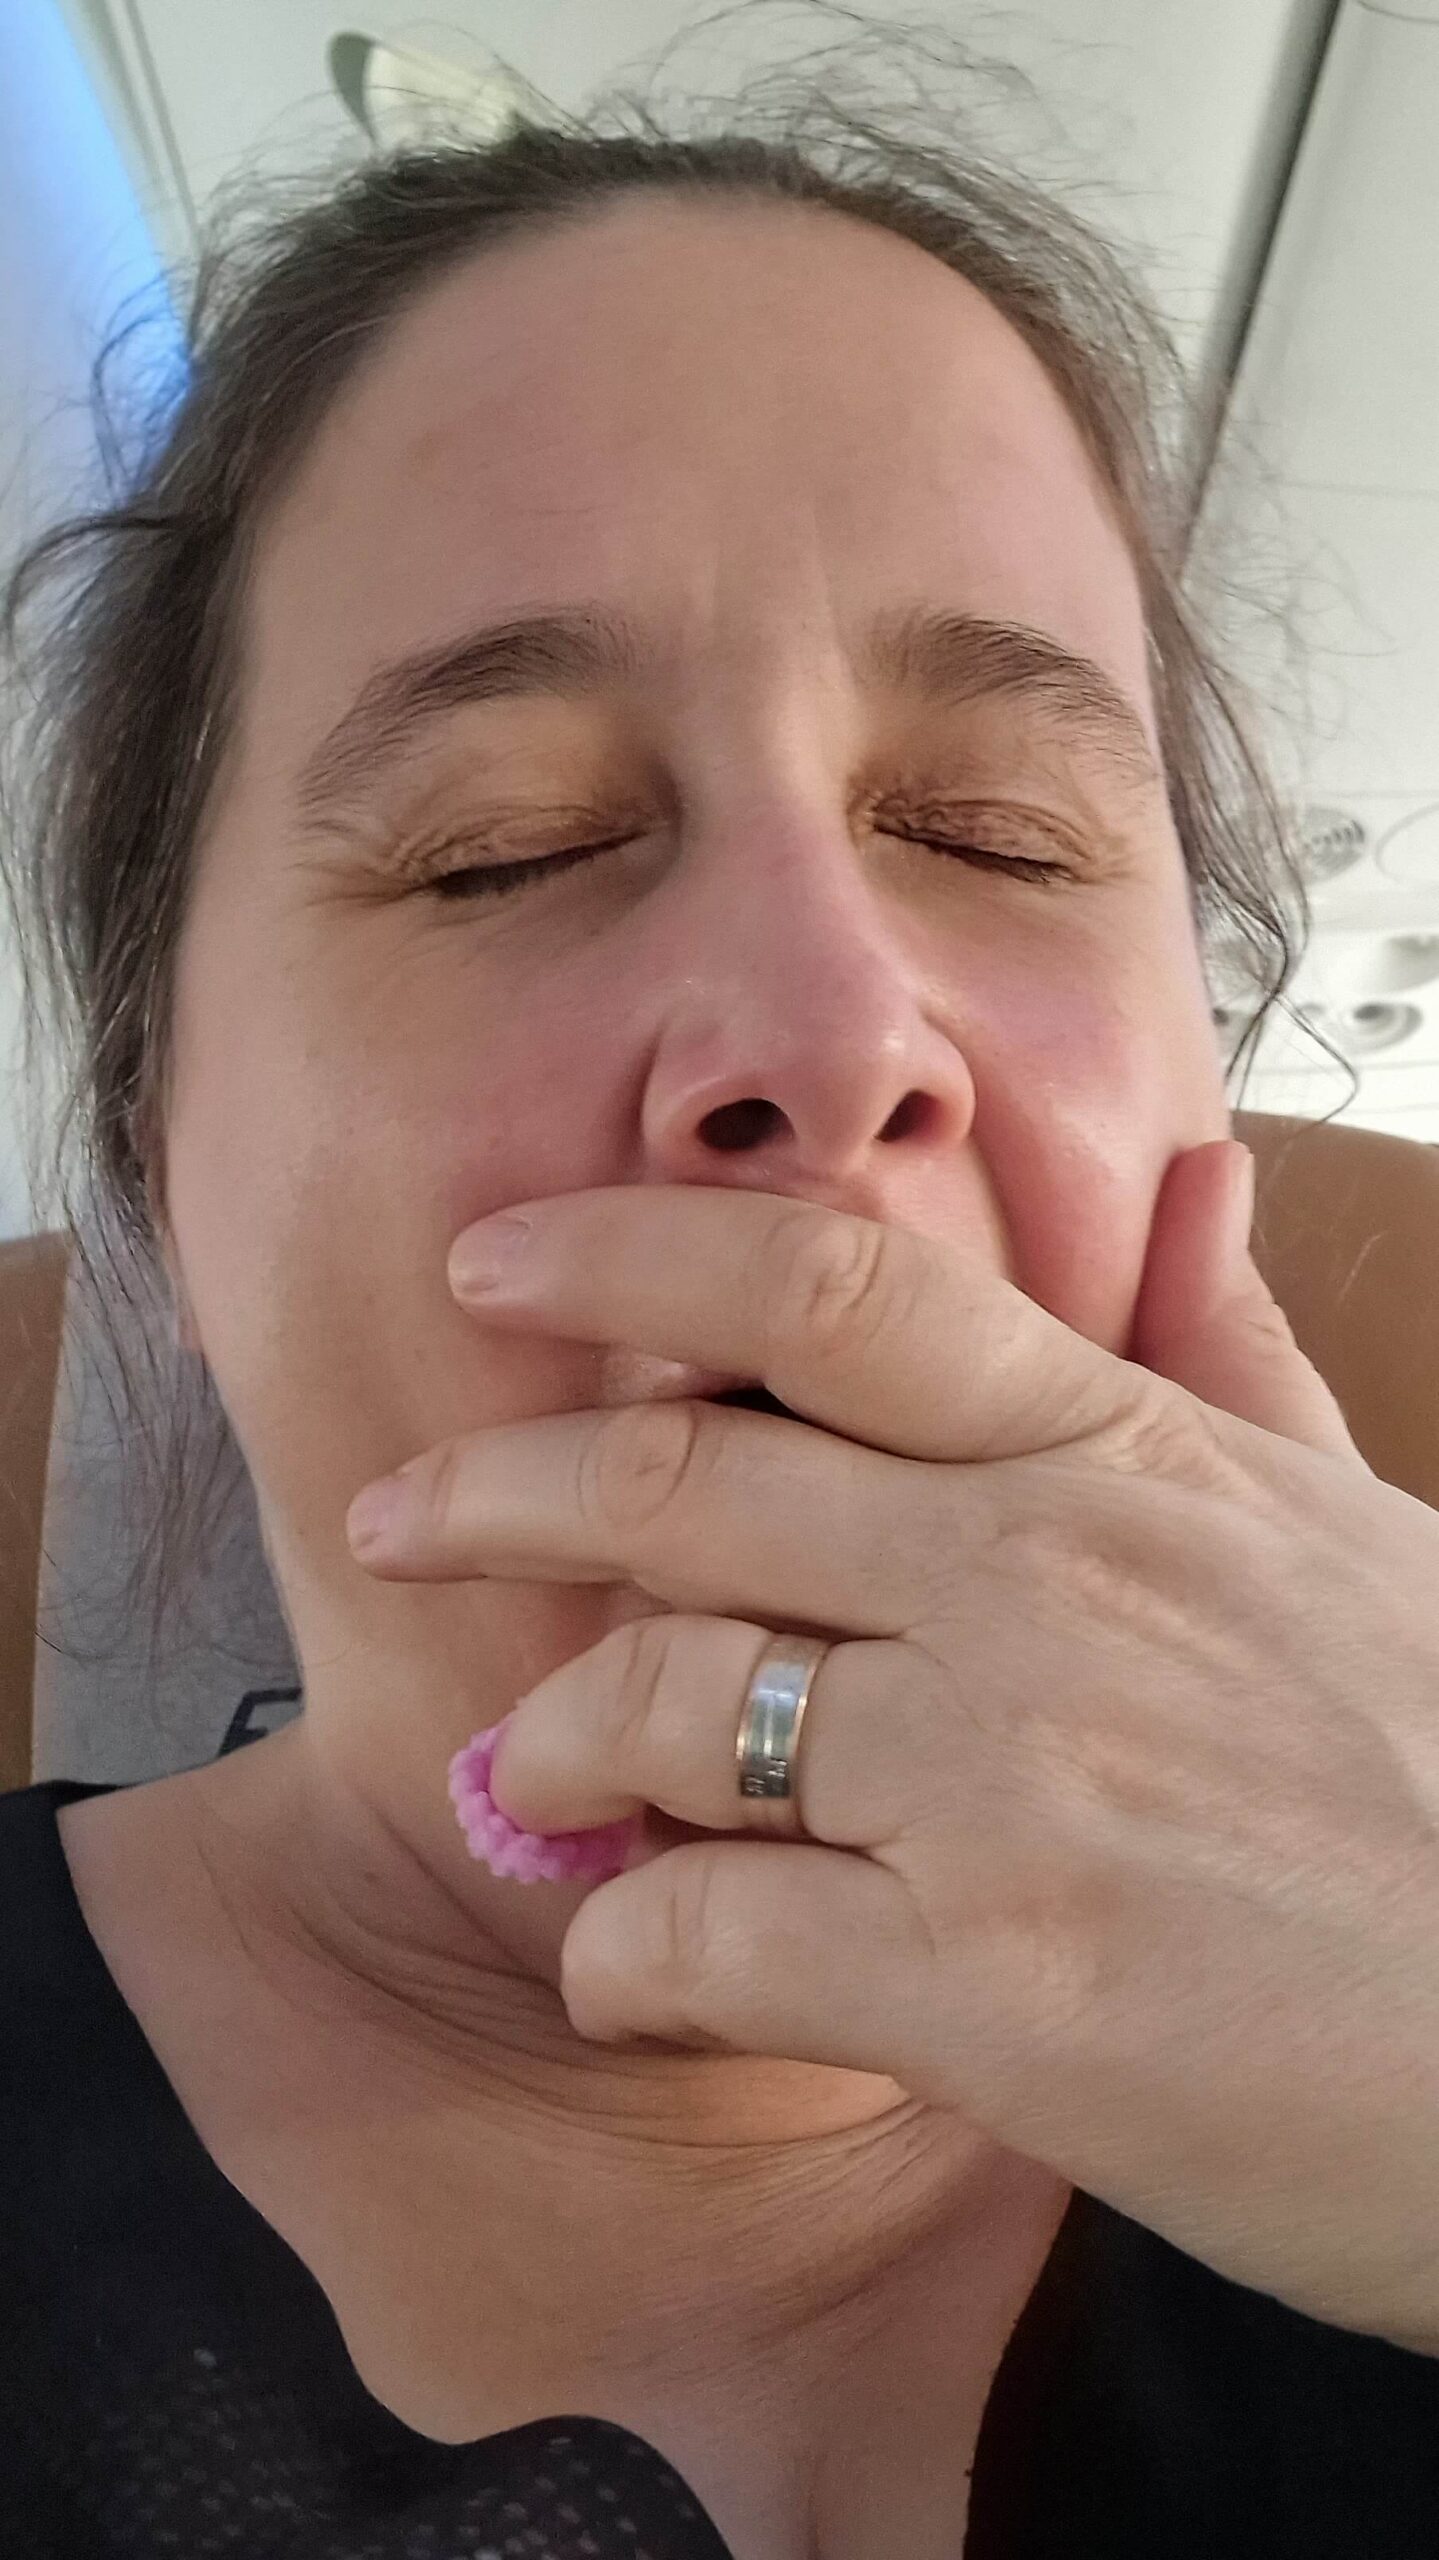 Selfie von einer gähnenden Frau, sie hält die Hand vor den Mund und hat die Augen geschlossen